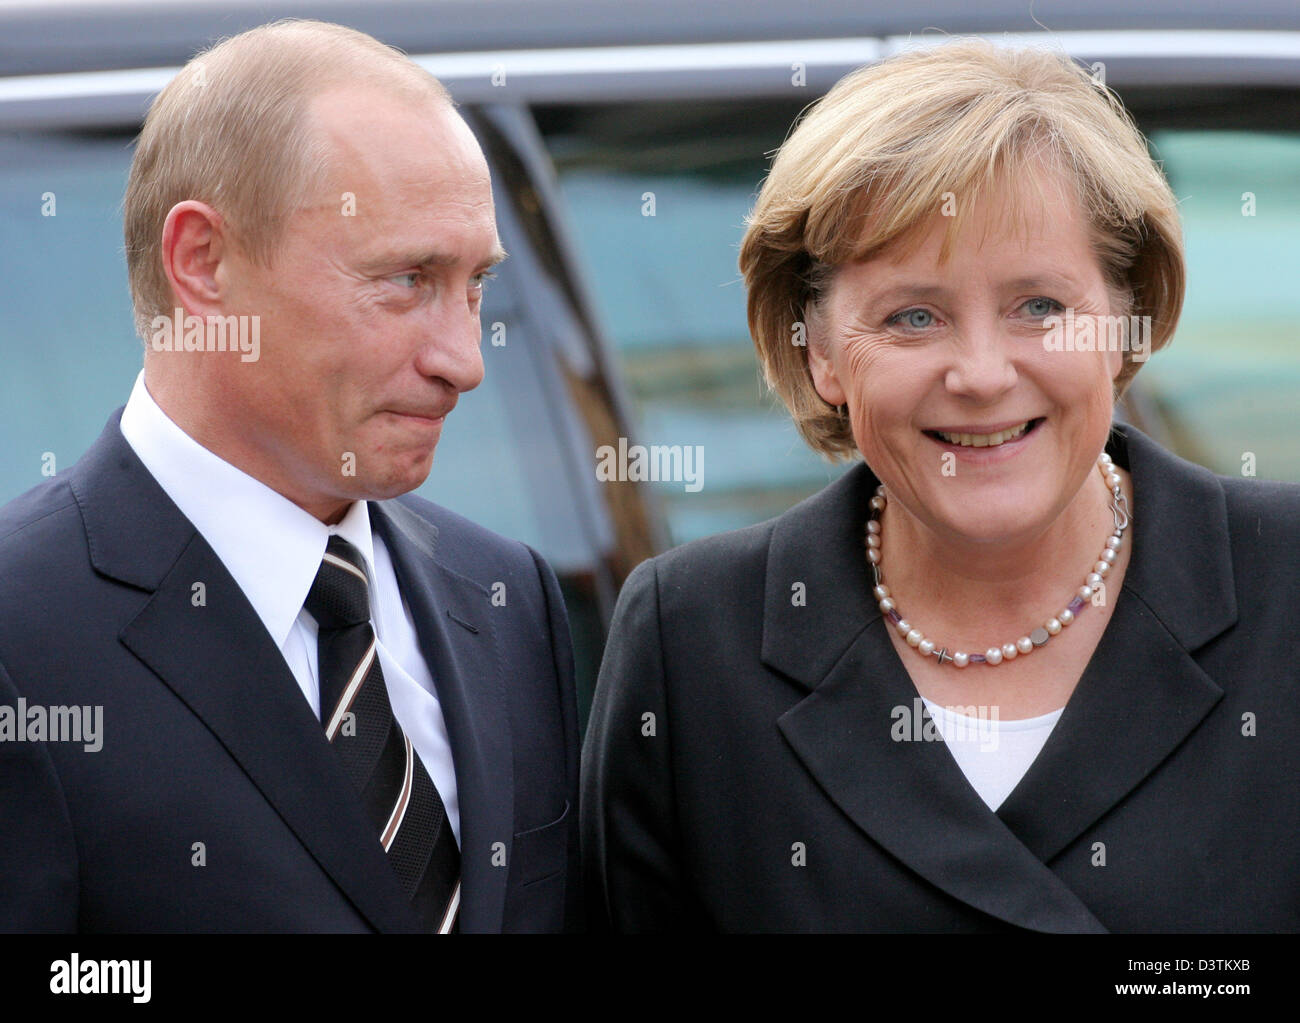 La chancelière allemande Angela Merkel (R) et le président russe Poutine Vladimr arrivent à Dresde, Allemagne, mardi 10 octobre 2006. Les deux participent à la réunion finale du dialogue de Saint-Pétersbourg. Photo : Matthias Hiekel Banque D'Images